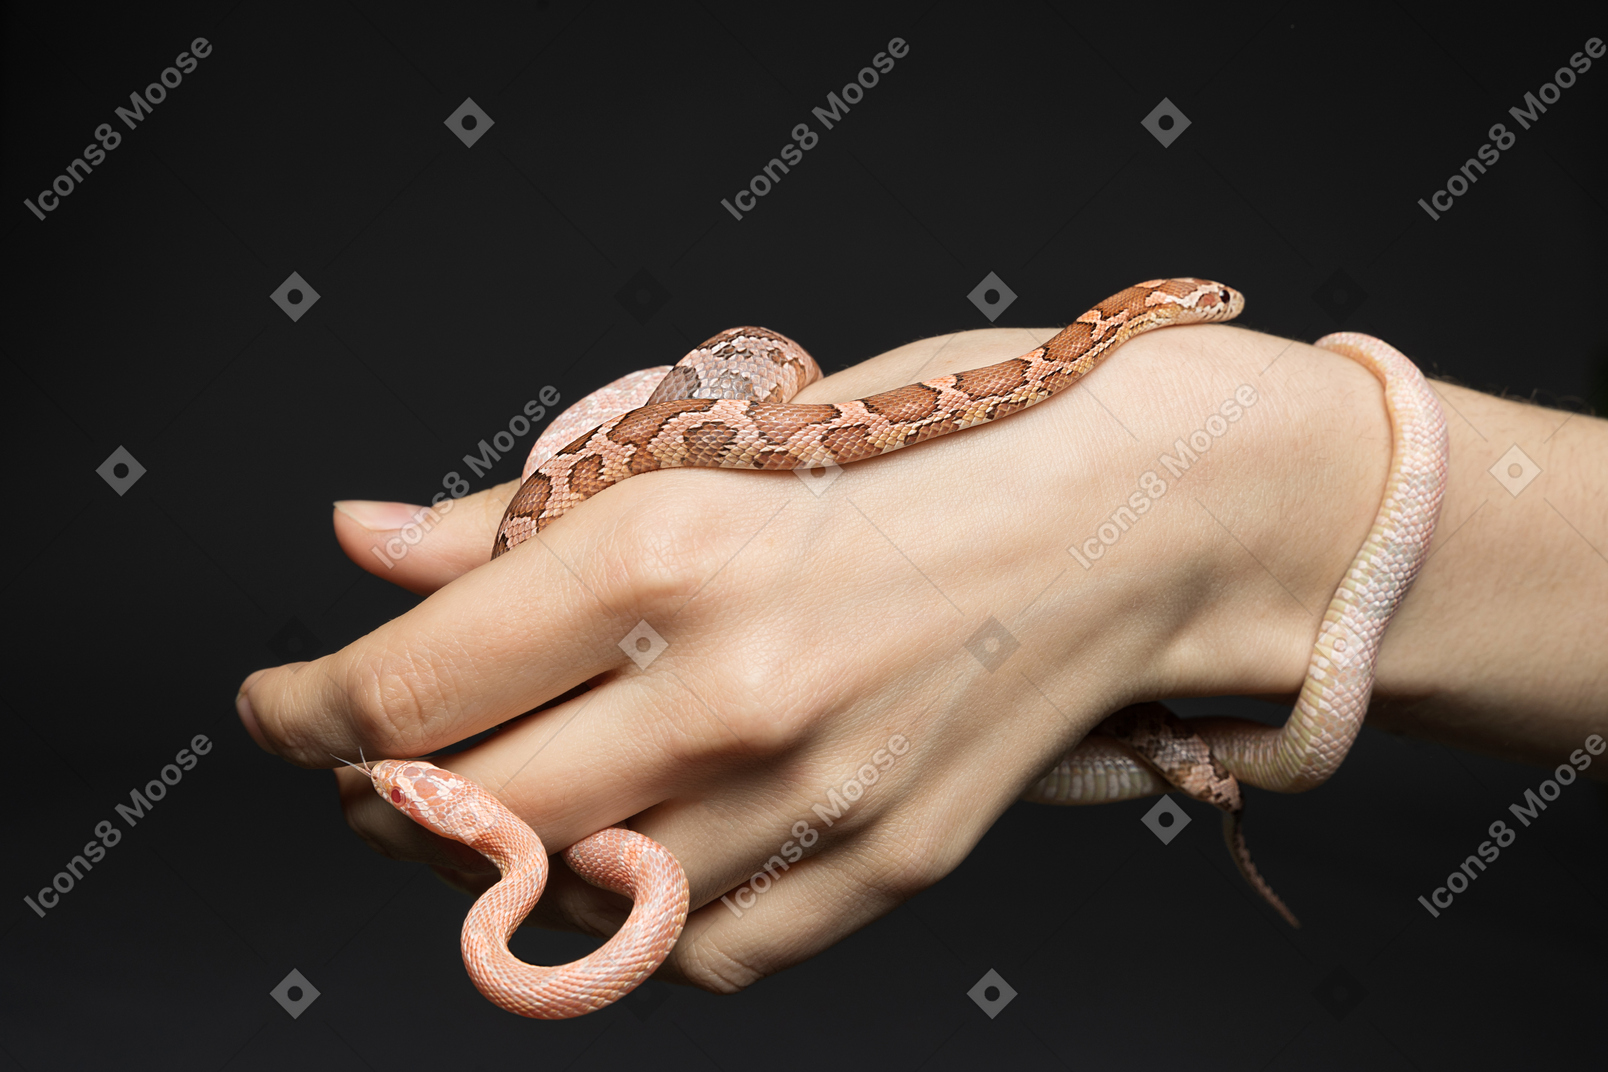 Duas pequenas cobras de milho na mão do ser humano